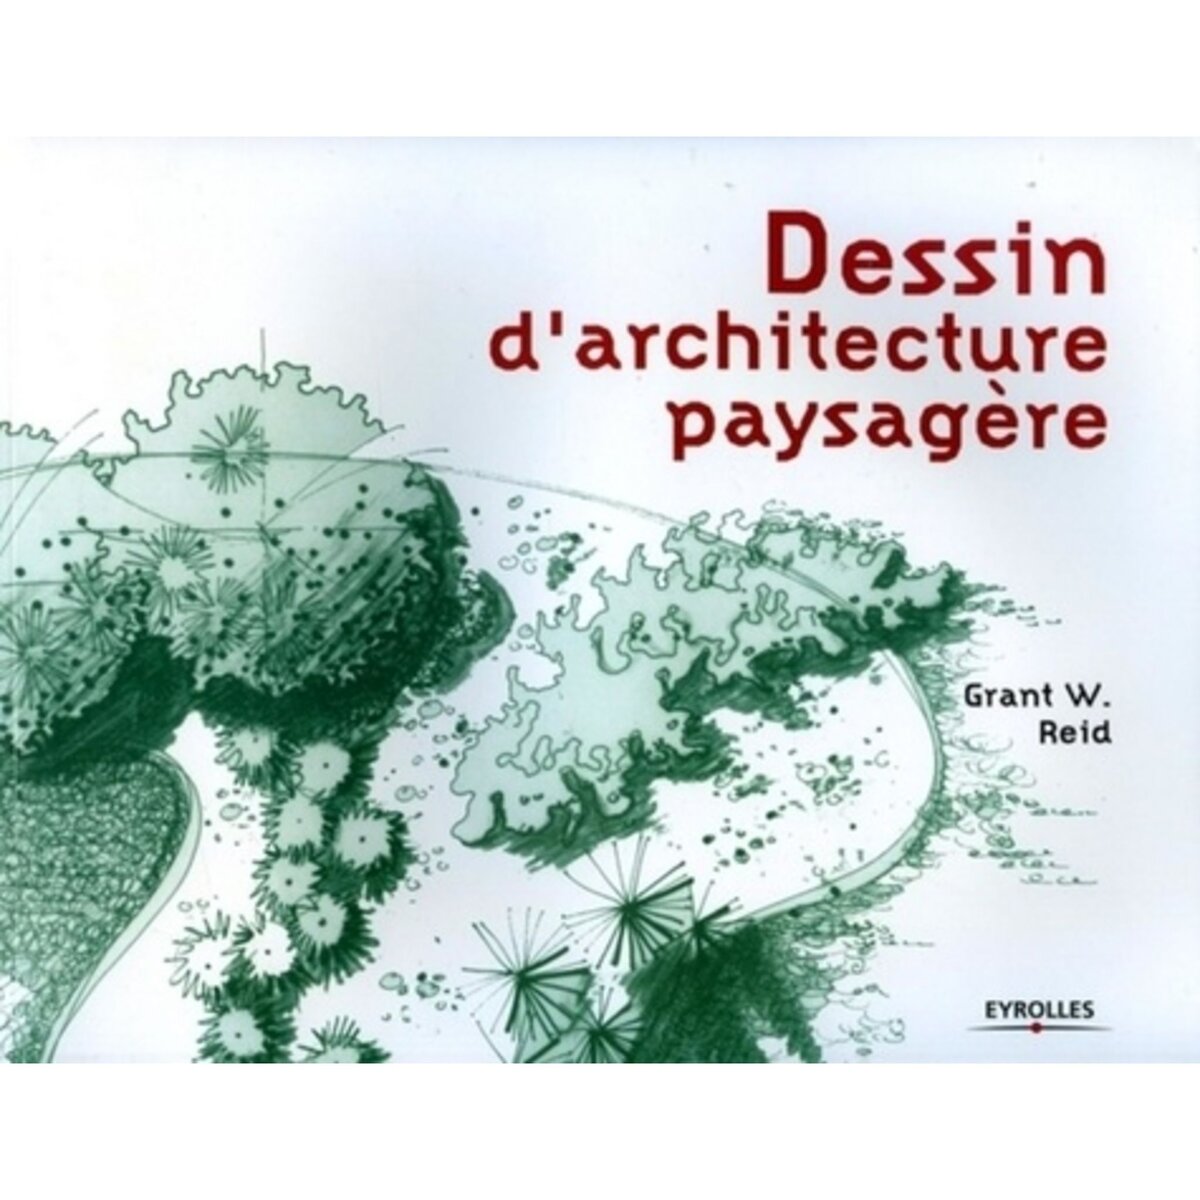  DESSIN D'ARCHITECTURE PAYSAGERE, Reid Grant-W